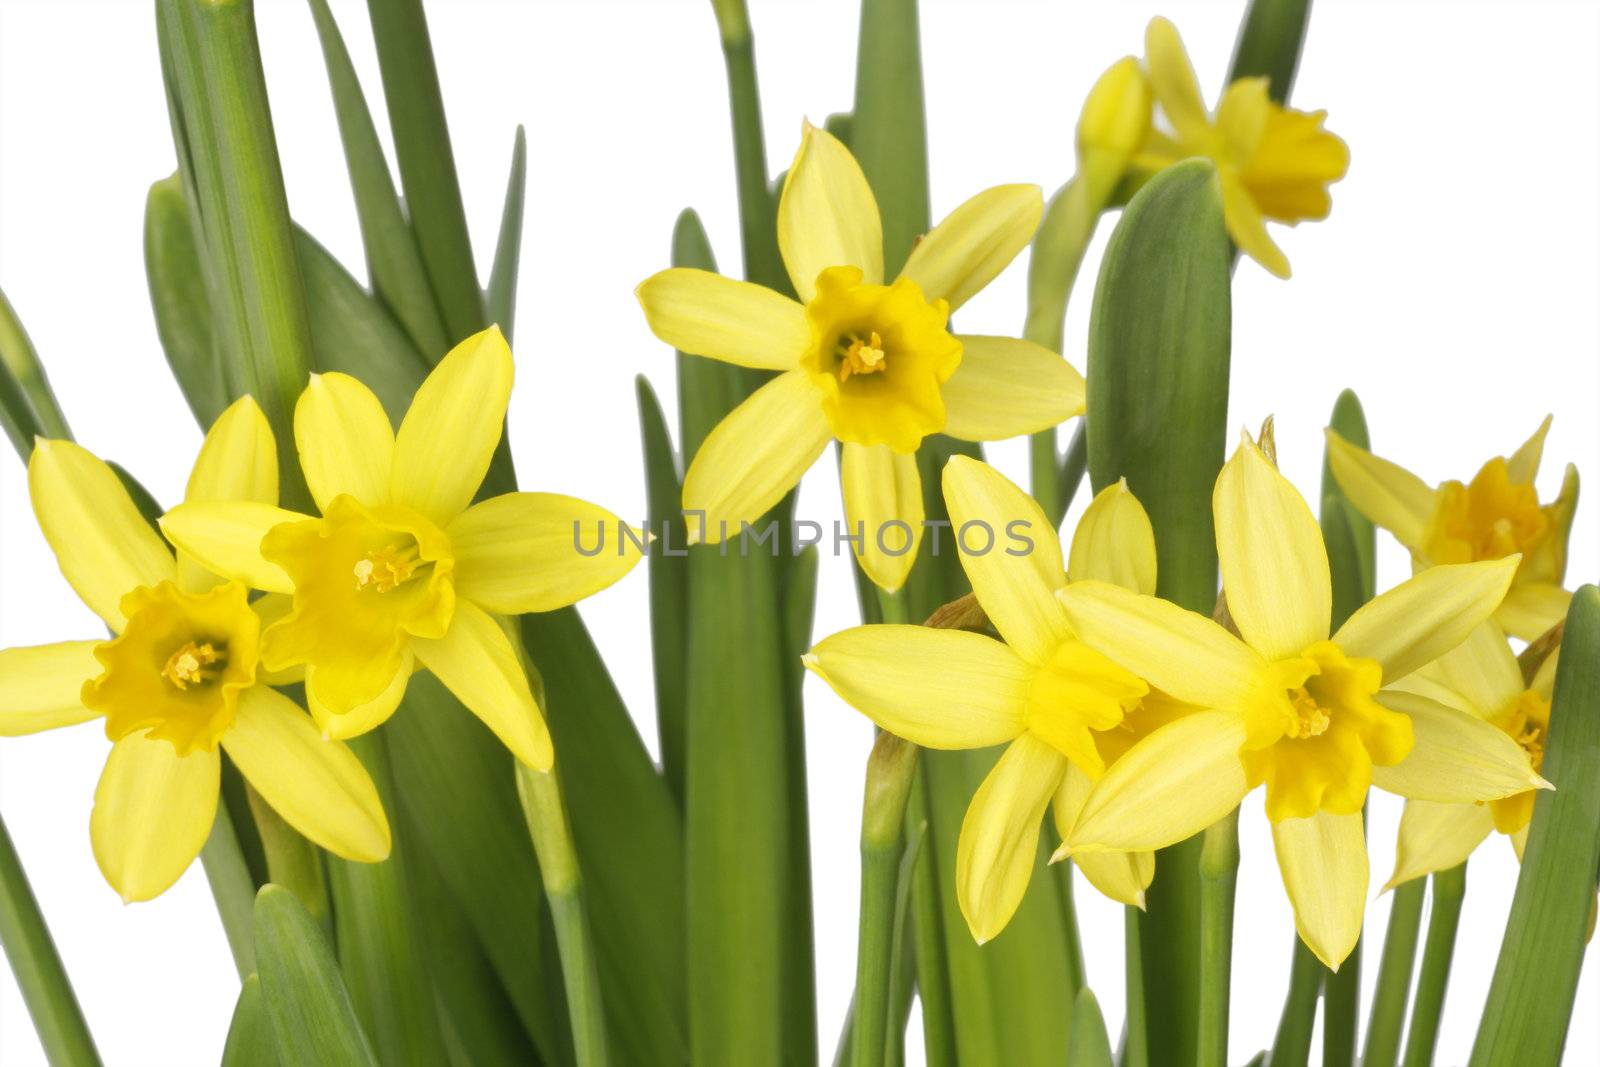 Daffodils by Teamarbeit